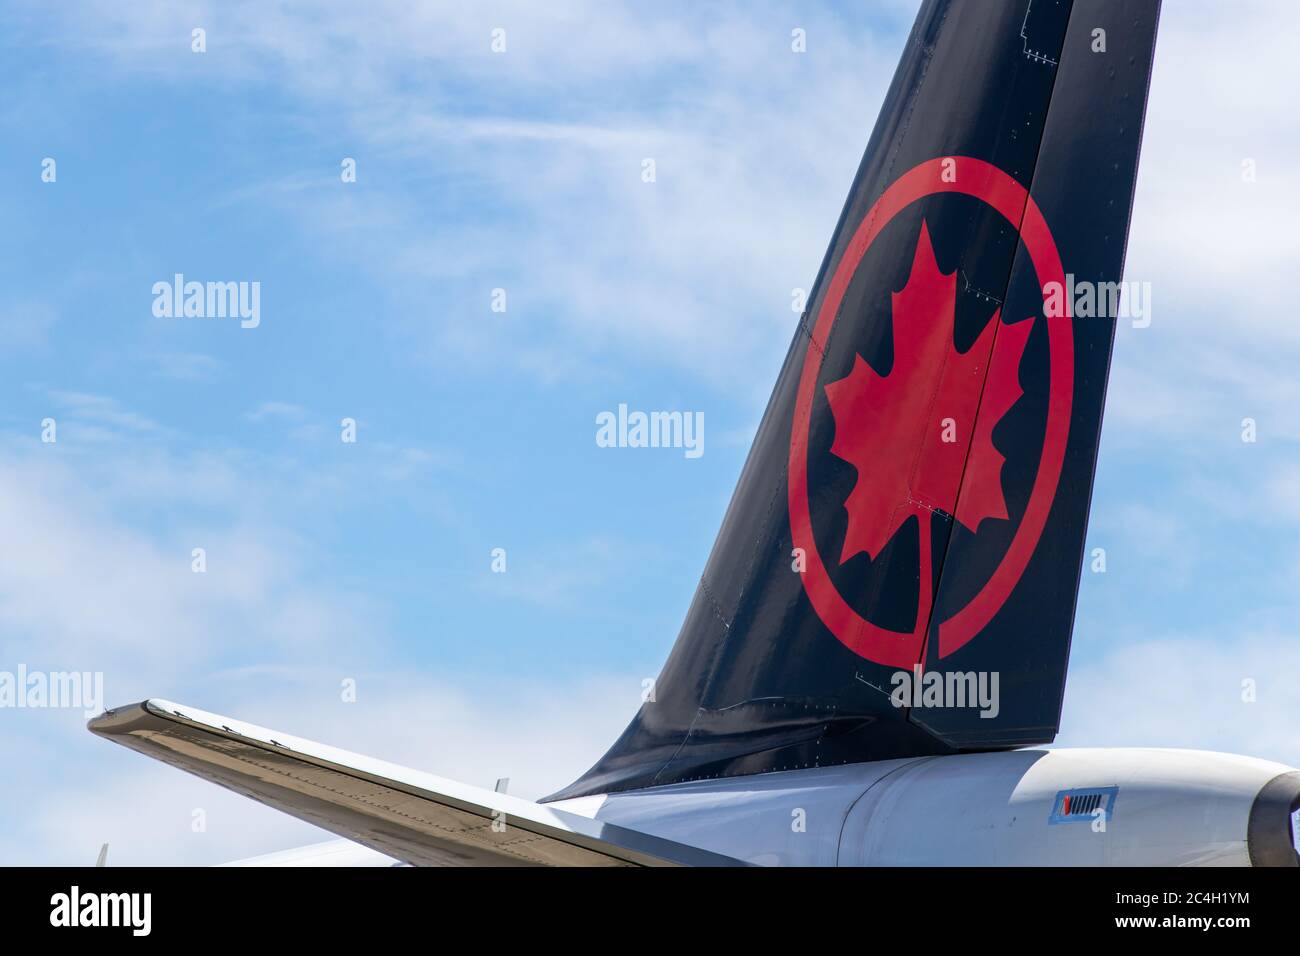 Logo d'Air Canada sur la queue d'un aéronef en stationnement à l'aéroport international de Windsor. Banque D'Images